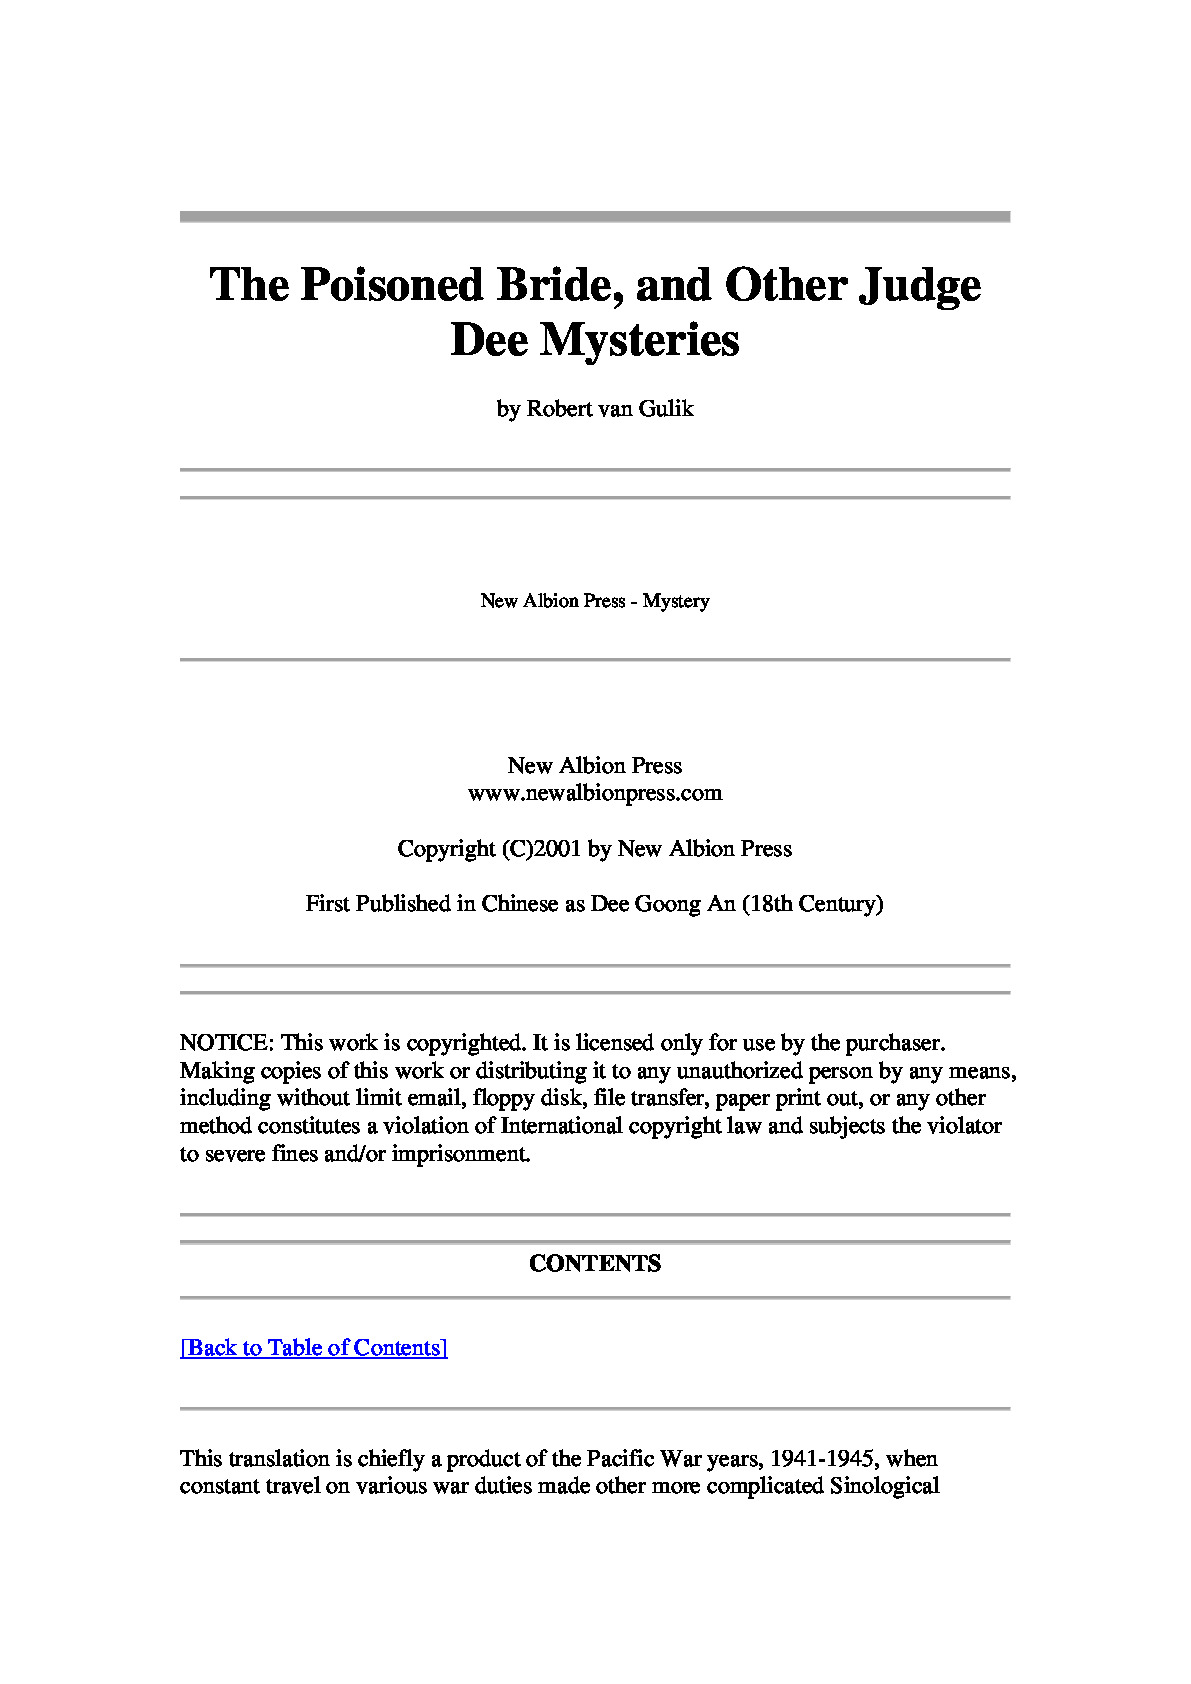 狄公案  – The Poisoned Bride and Other Judge Dee Mysteries